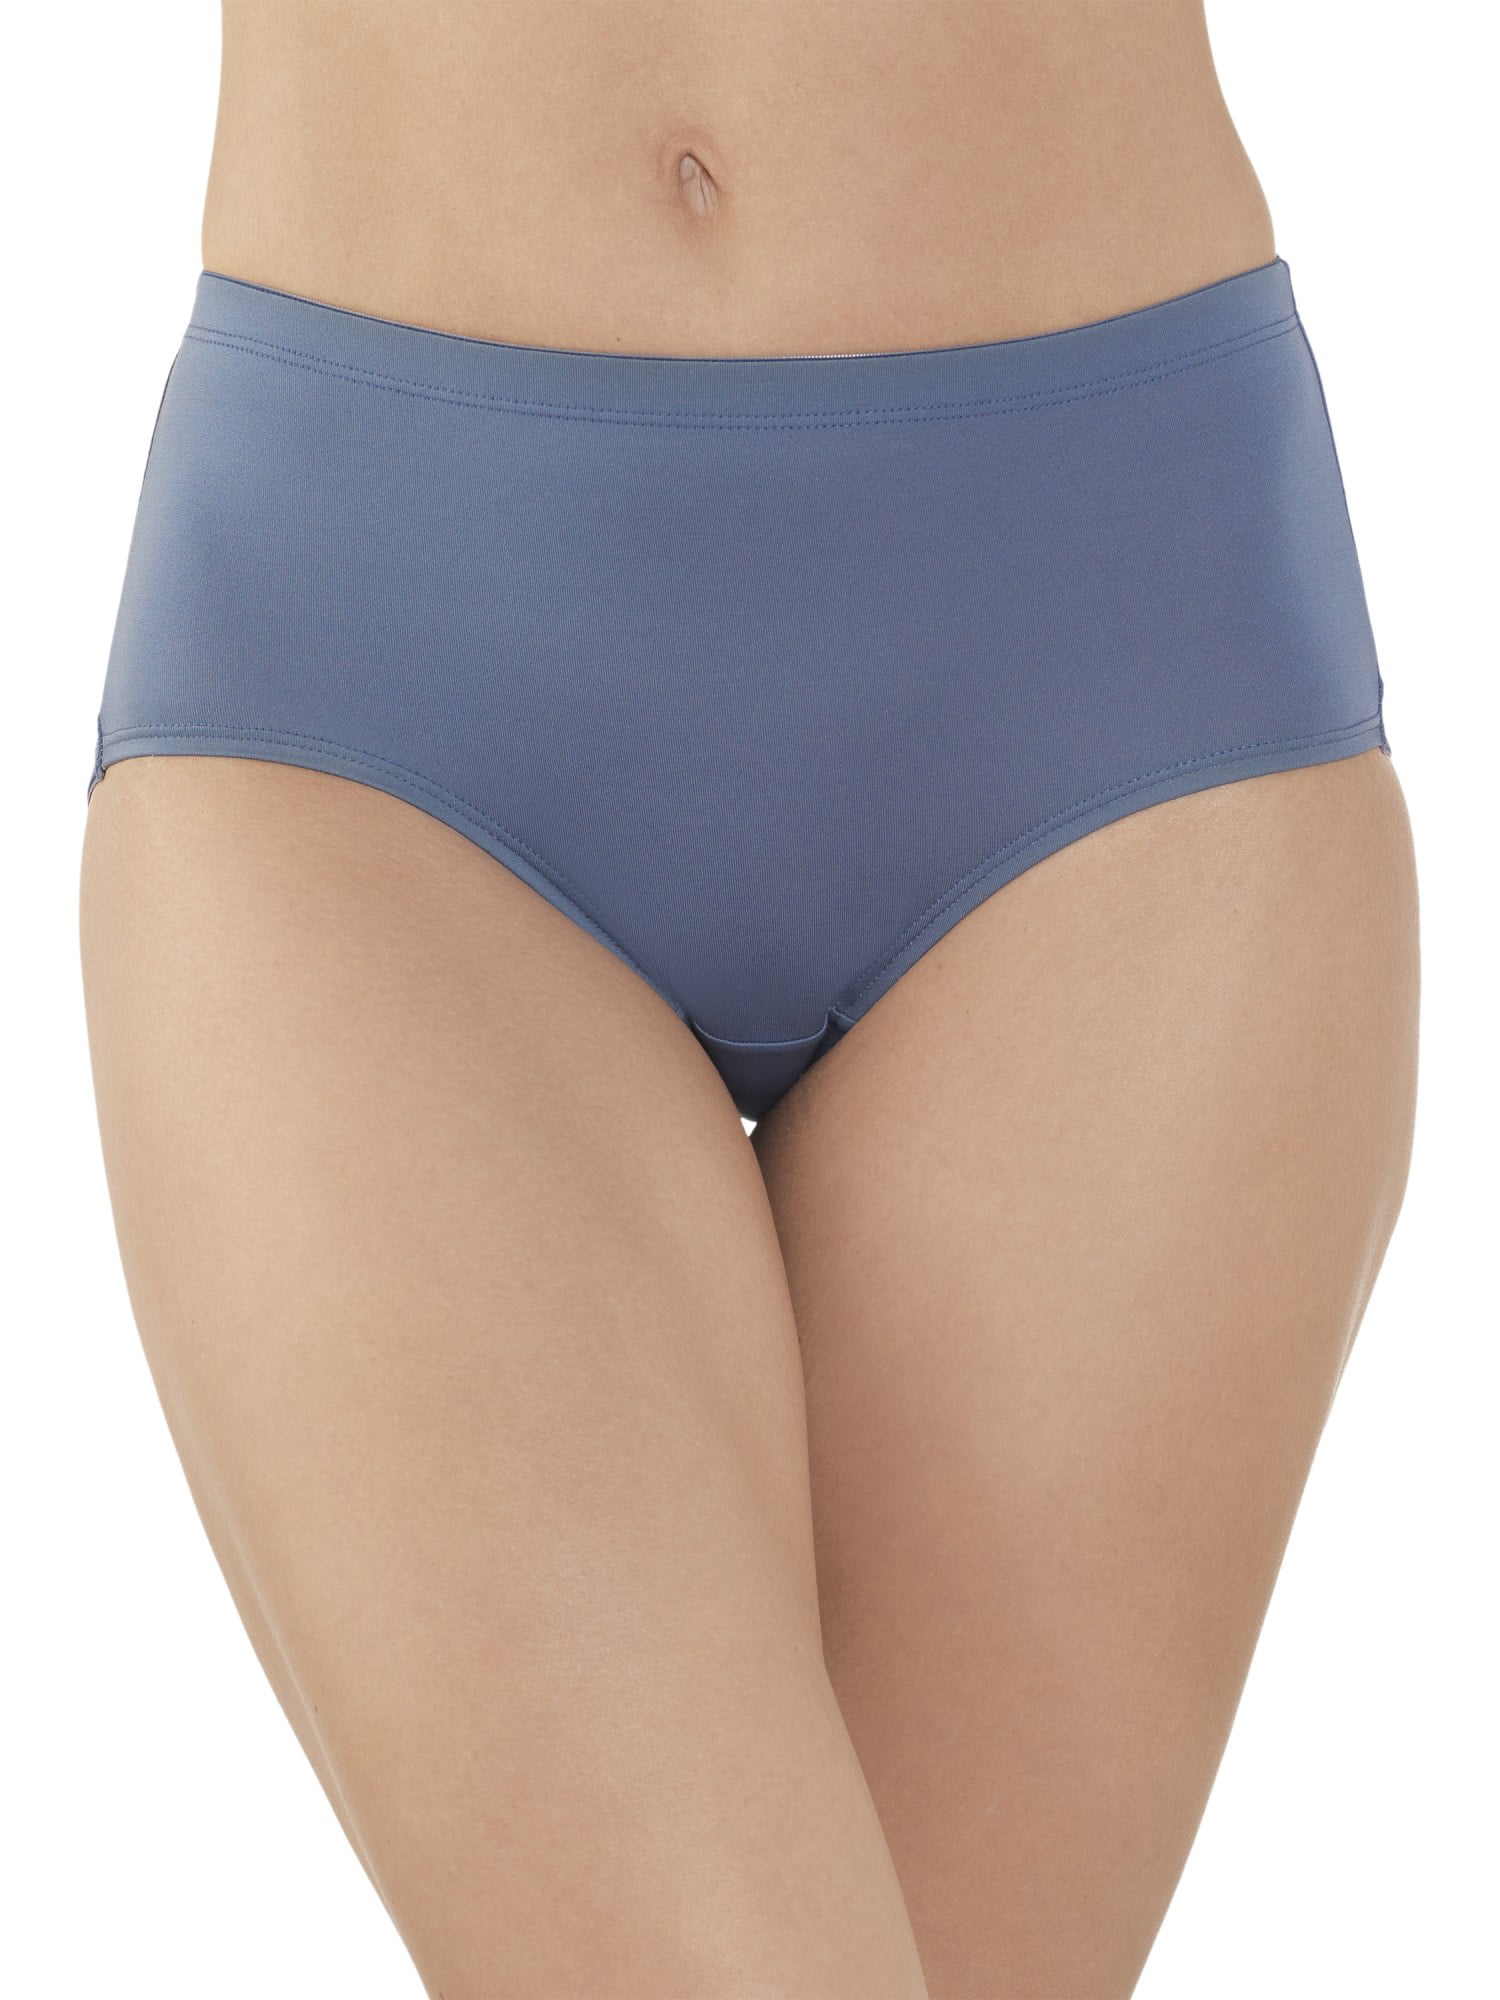 eboozone 8 Pack Women/'s Seamless Underwear Panties Mid Waist Briefs Ladies Underwear Brief Panties